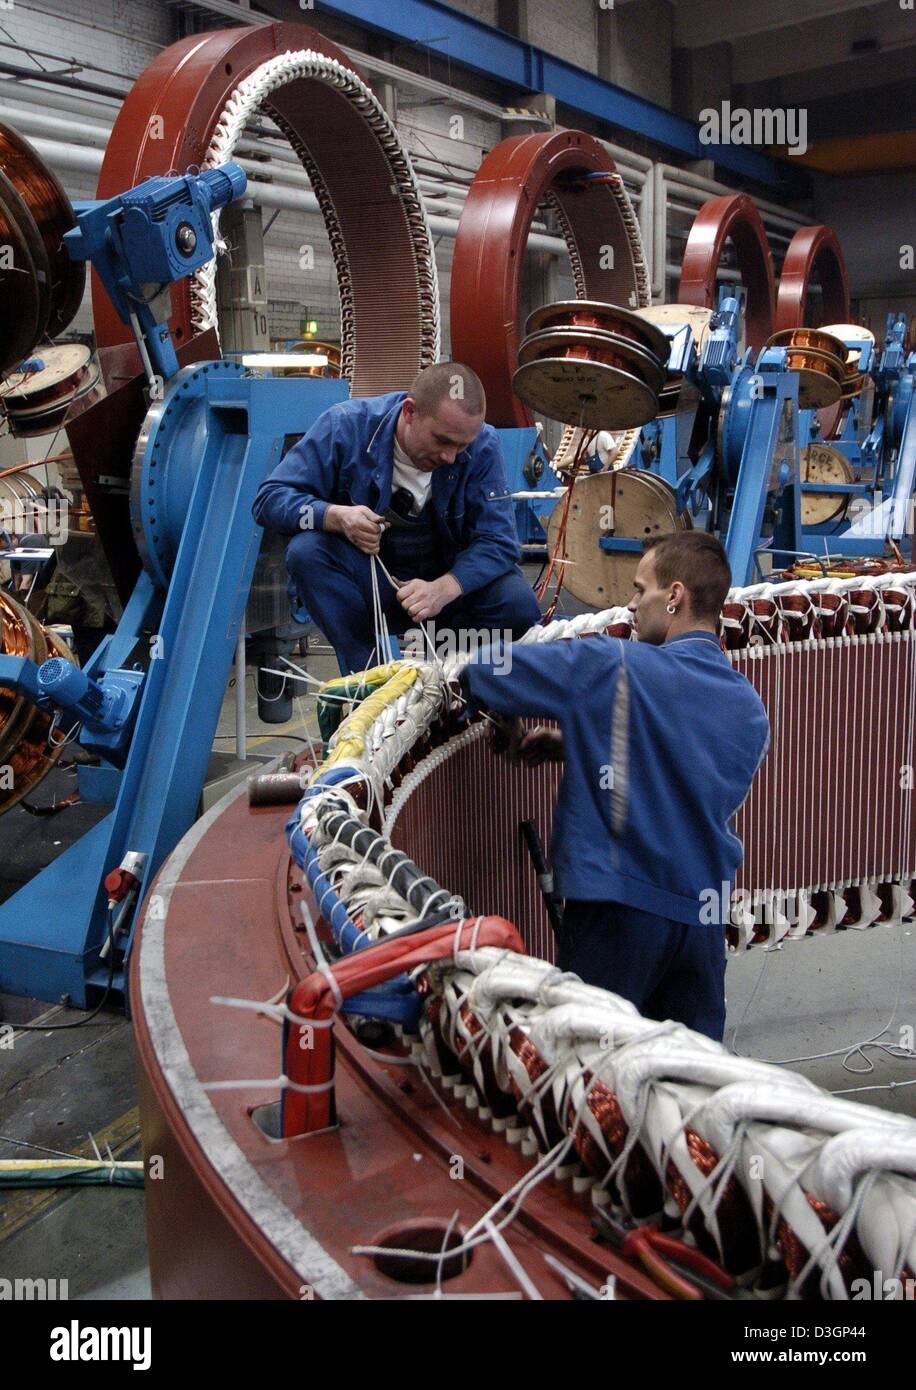 Dpa) - i tecnici lavorano su un alternatore per un impianto eolico, presso  il produttore della turbina eolica Enercon a Magdeburgo, Germania, 23  gennaio 2004. Il Aurich basata sulla società ha iniziato